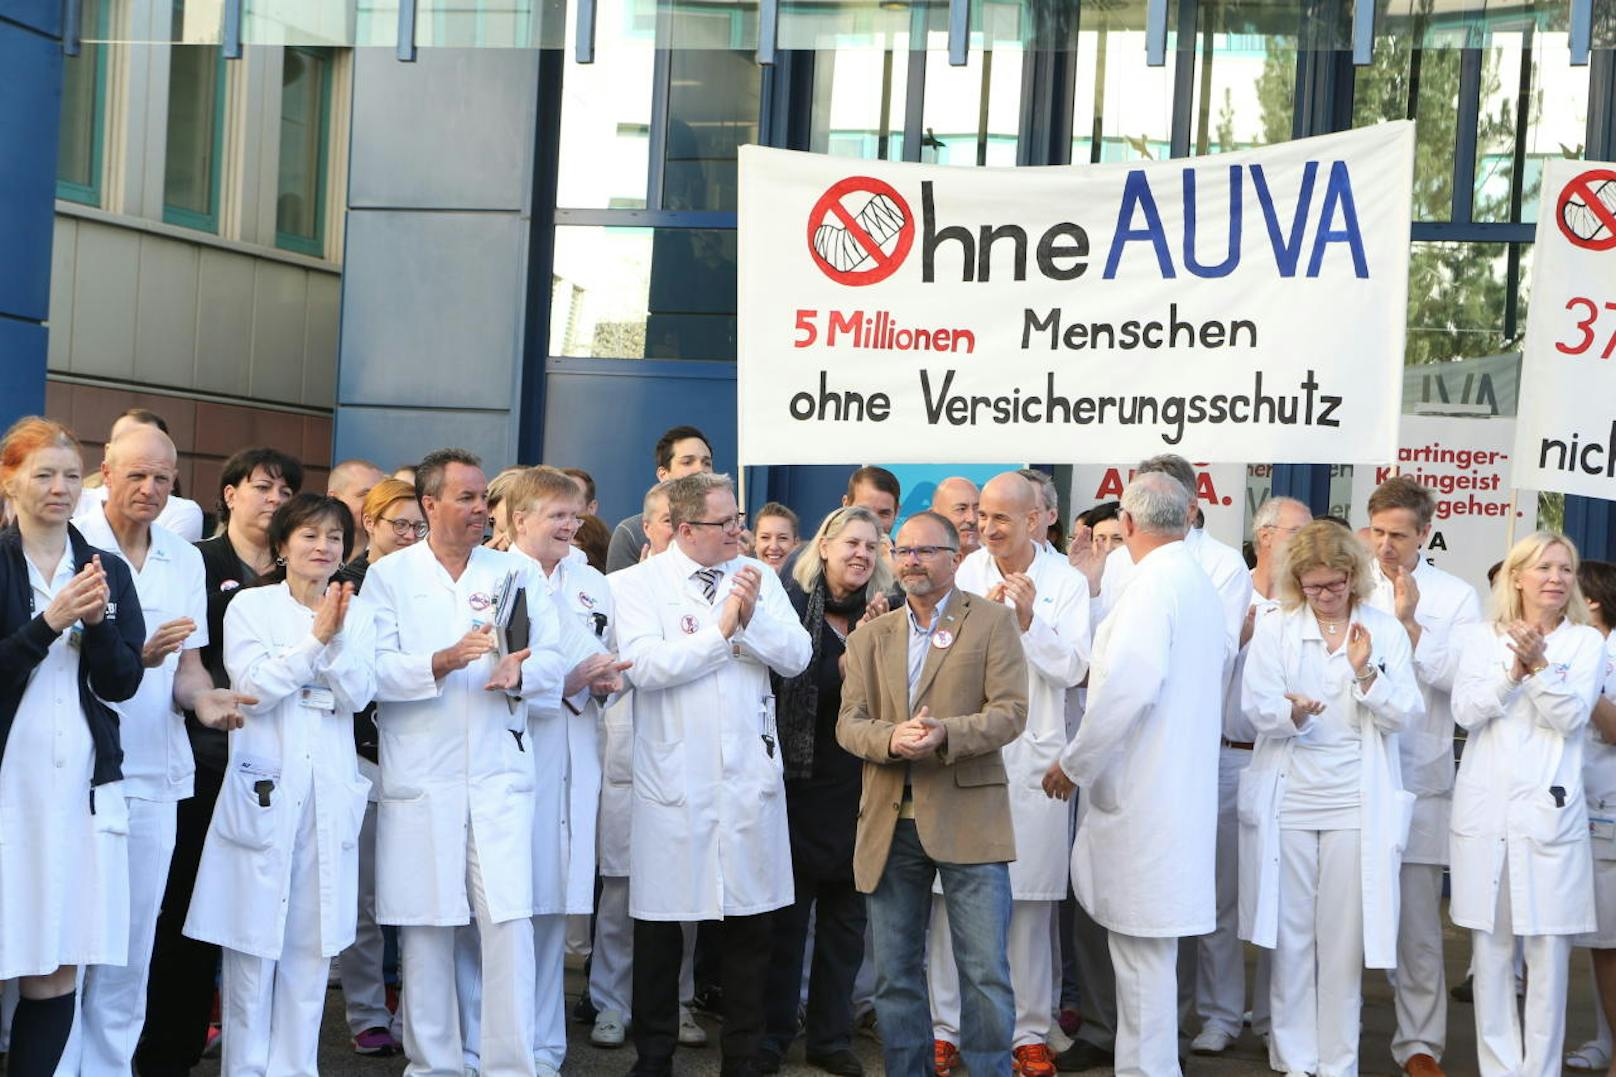 Die Ministerin solle "die Zerstörung der AUVA" zurücknehmen, so Betriebsrat Manfred Rabensteiner gegenüber "ORF Wien".